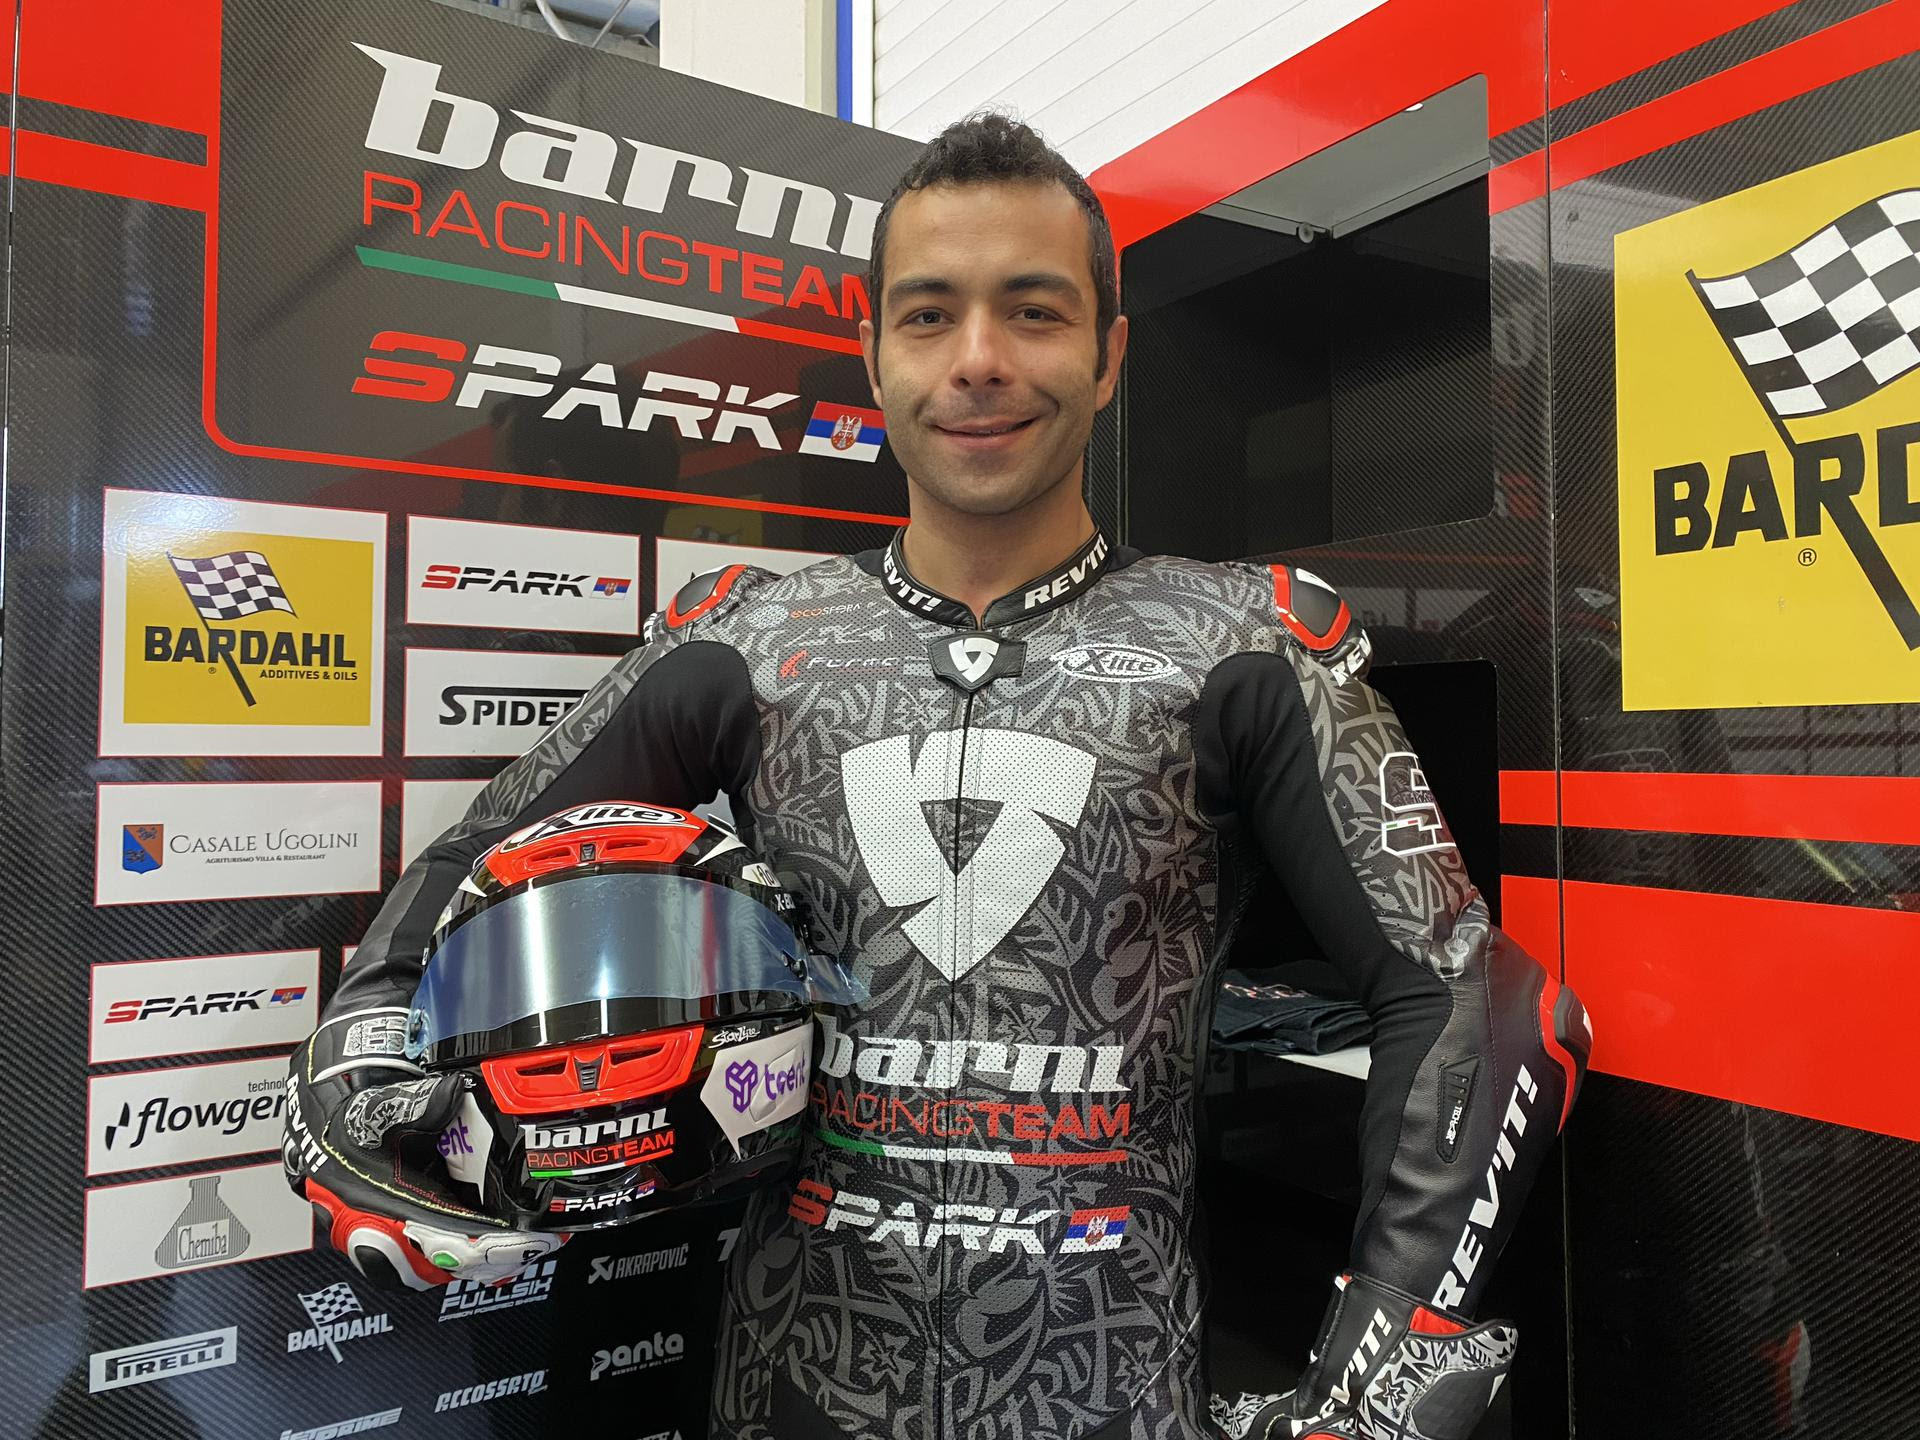 Danilo Petrucci, Barni Ducati WorldSBK